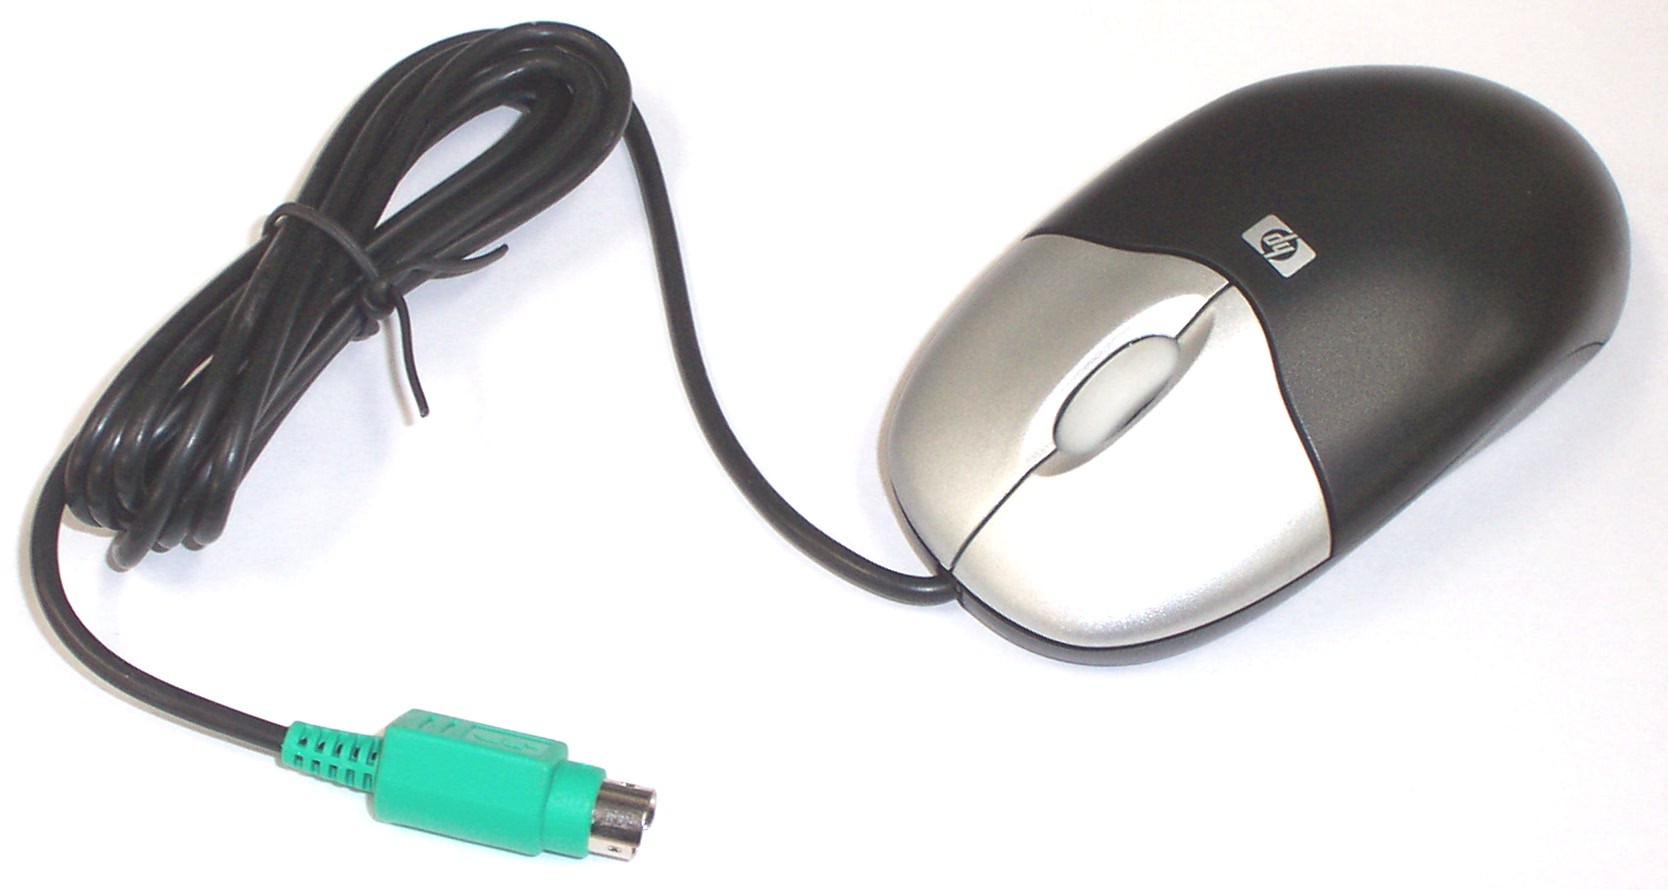  HP 417441 PS/2 mouse ile aynı usbli model lazım